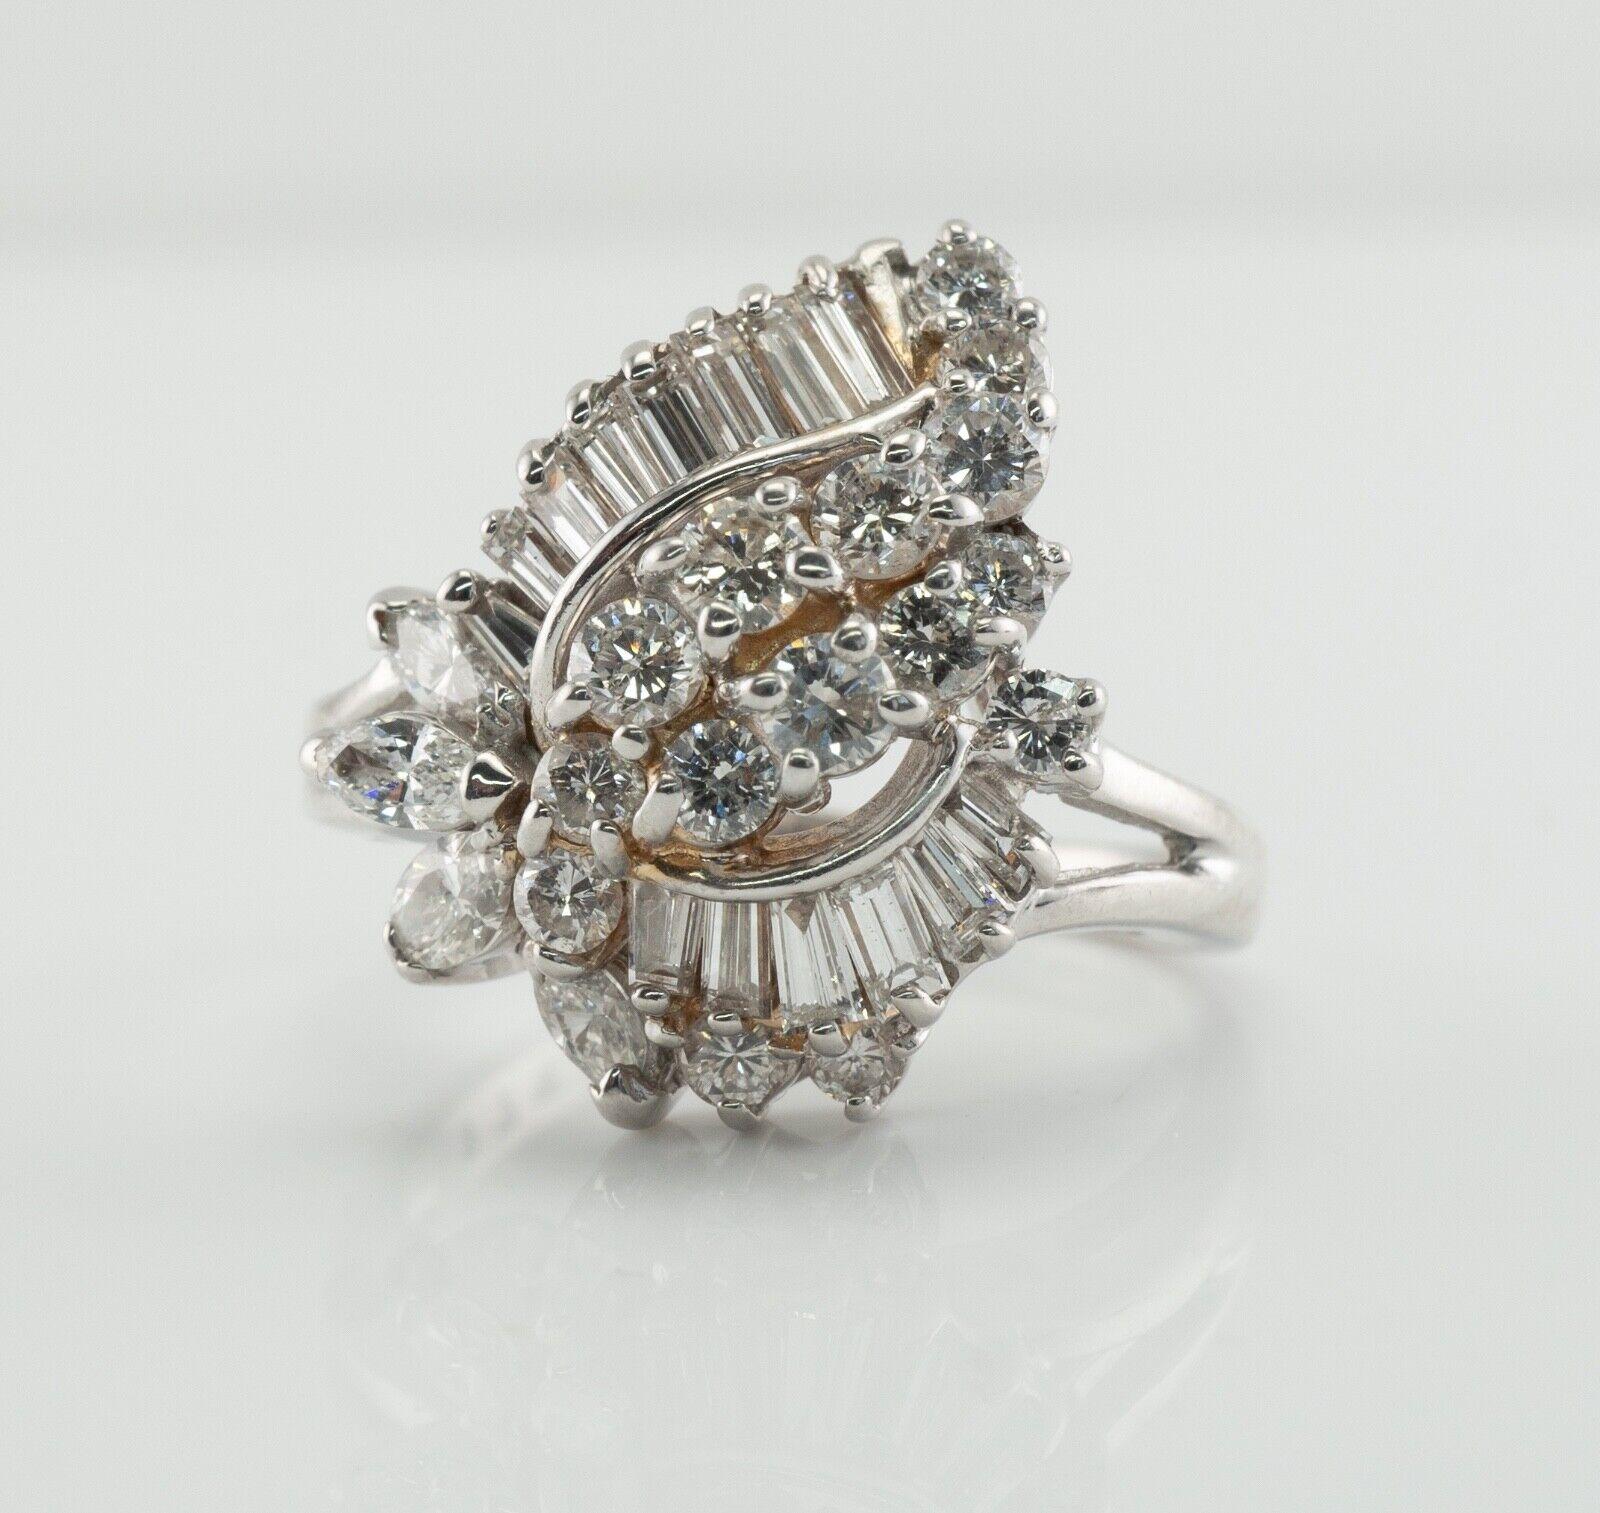 Dieser fantastische Vintage-Ring ist aus massivem 14-karätigem Weißgold gefertigt.
Der Ring hält:
- 15 runde Diamanten im Brillantschliff (.75 Karat)
- 14 geschliffene Diamanten (.48 Karat)
- 4 Diamanten im Marquise-Schliff (.50 Karat).
Die